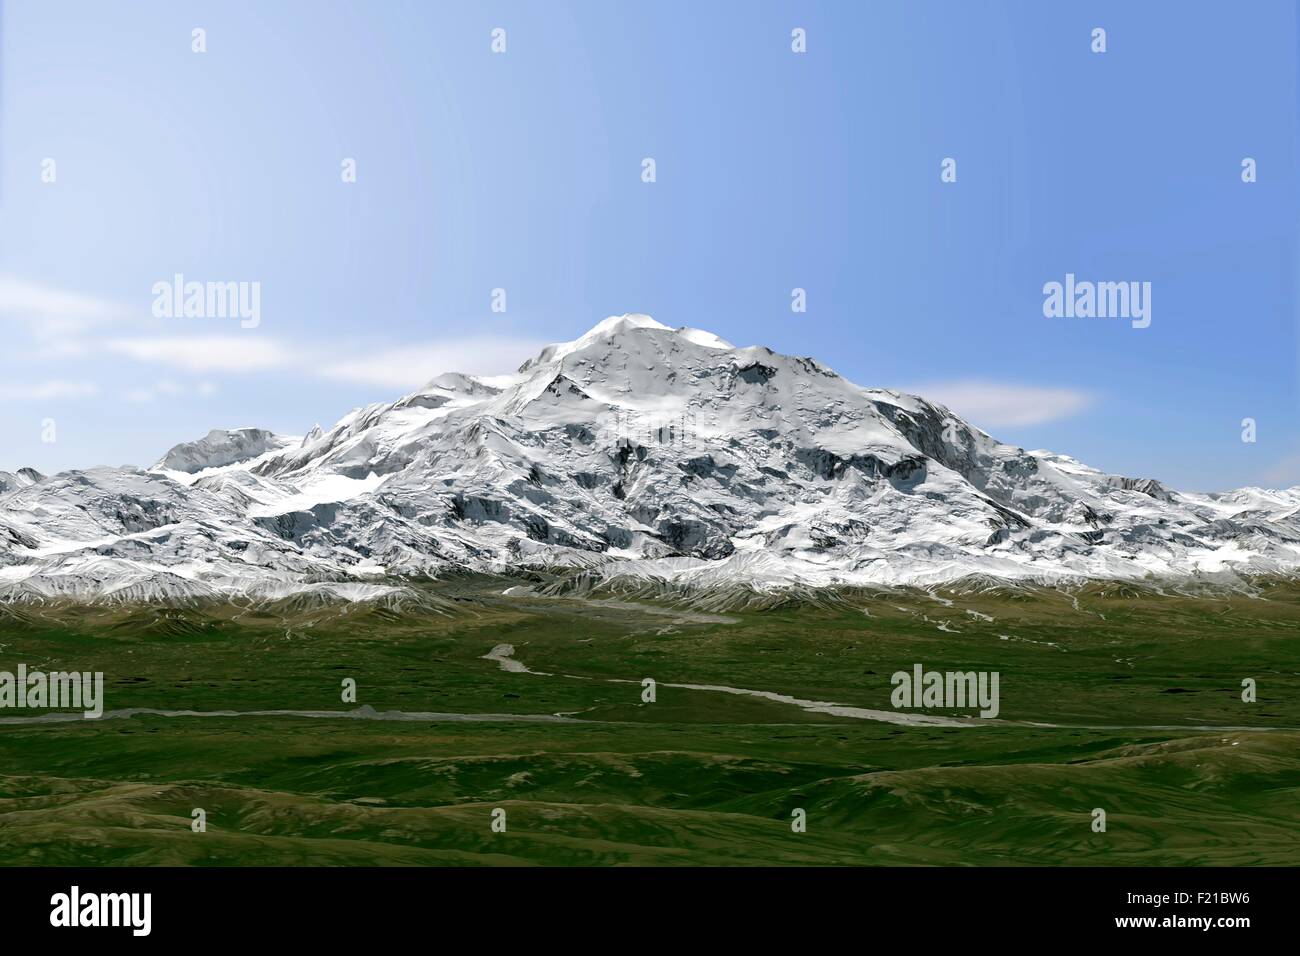 Jetzt genannt Mt McKinley Denali gesehen von der operativen Land Imager auf Landsat 8 15. Juni 2015 in der Erdumlaufbahn. Der Berg ist der höchste Berggipfel in Nordamerika. Die United States Geological Survey gab bekannt, dass Denali Gipfel eine neue, offizielle Höhe von 20.310 Metern (6.190) Ñ10 Fuß kürzer als Vermesser hatte in den 1950er Jahren bestimmt. Der Berg ist nicht geschrumpft. Stattdessen hat die Technologie verbessert. Stockfoto